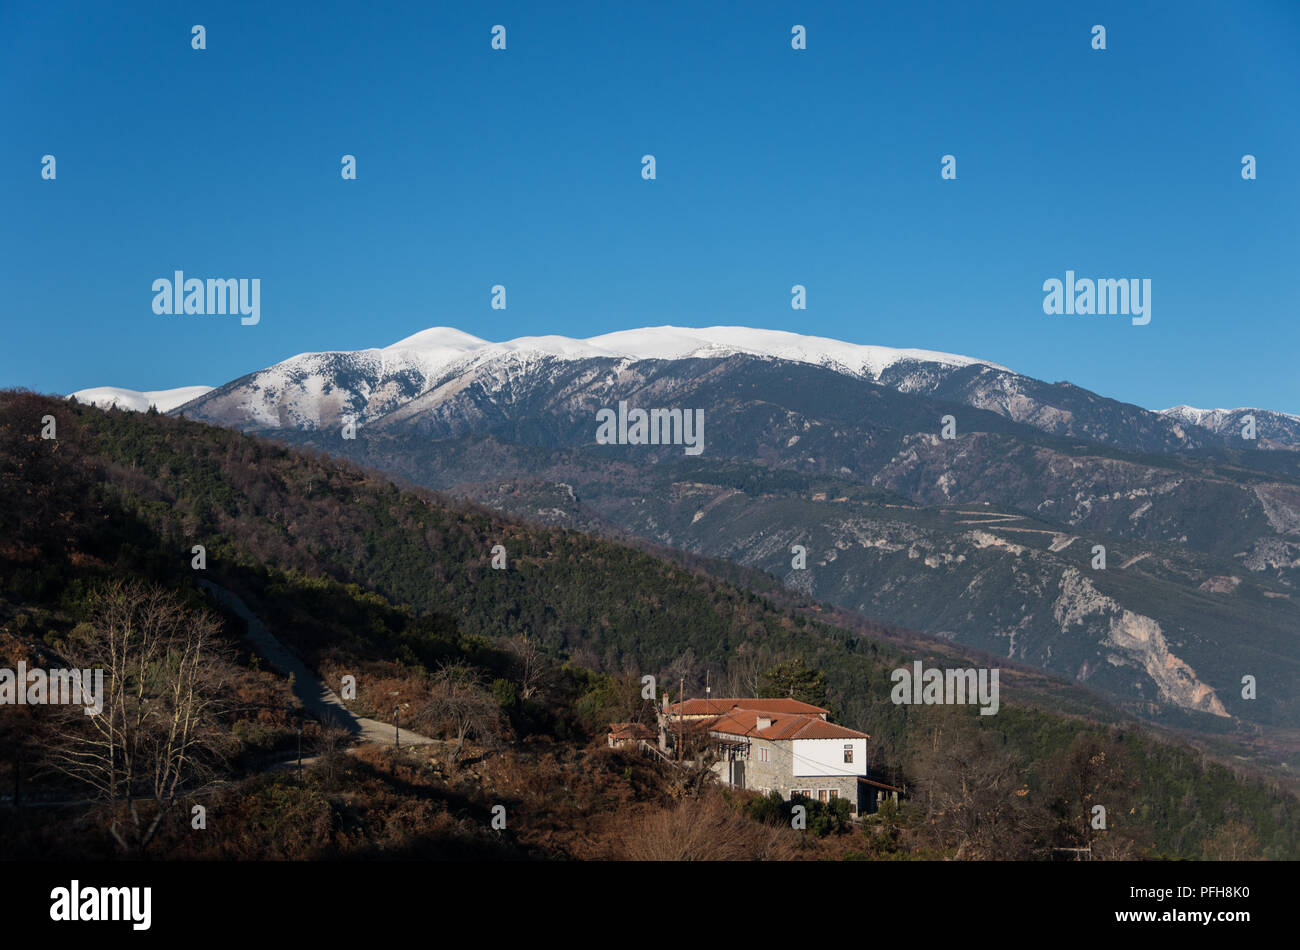 Palaios Panteleimonas village in Leptokaria region with Olympus mount at background, Greece Stock Photo